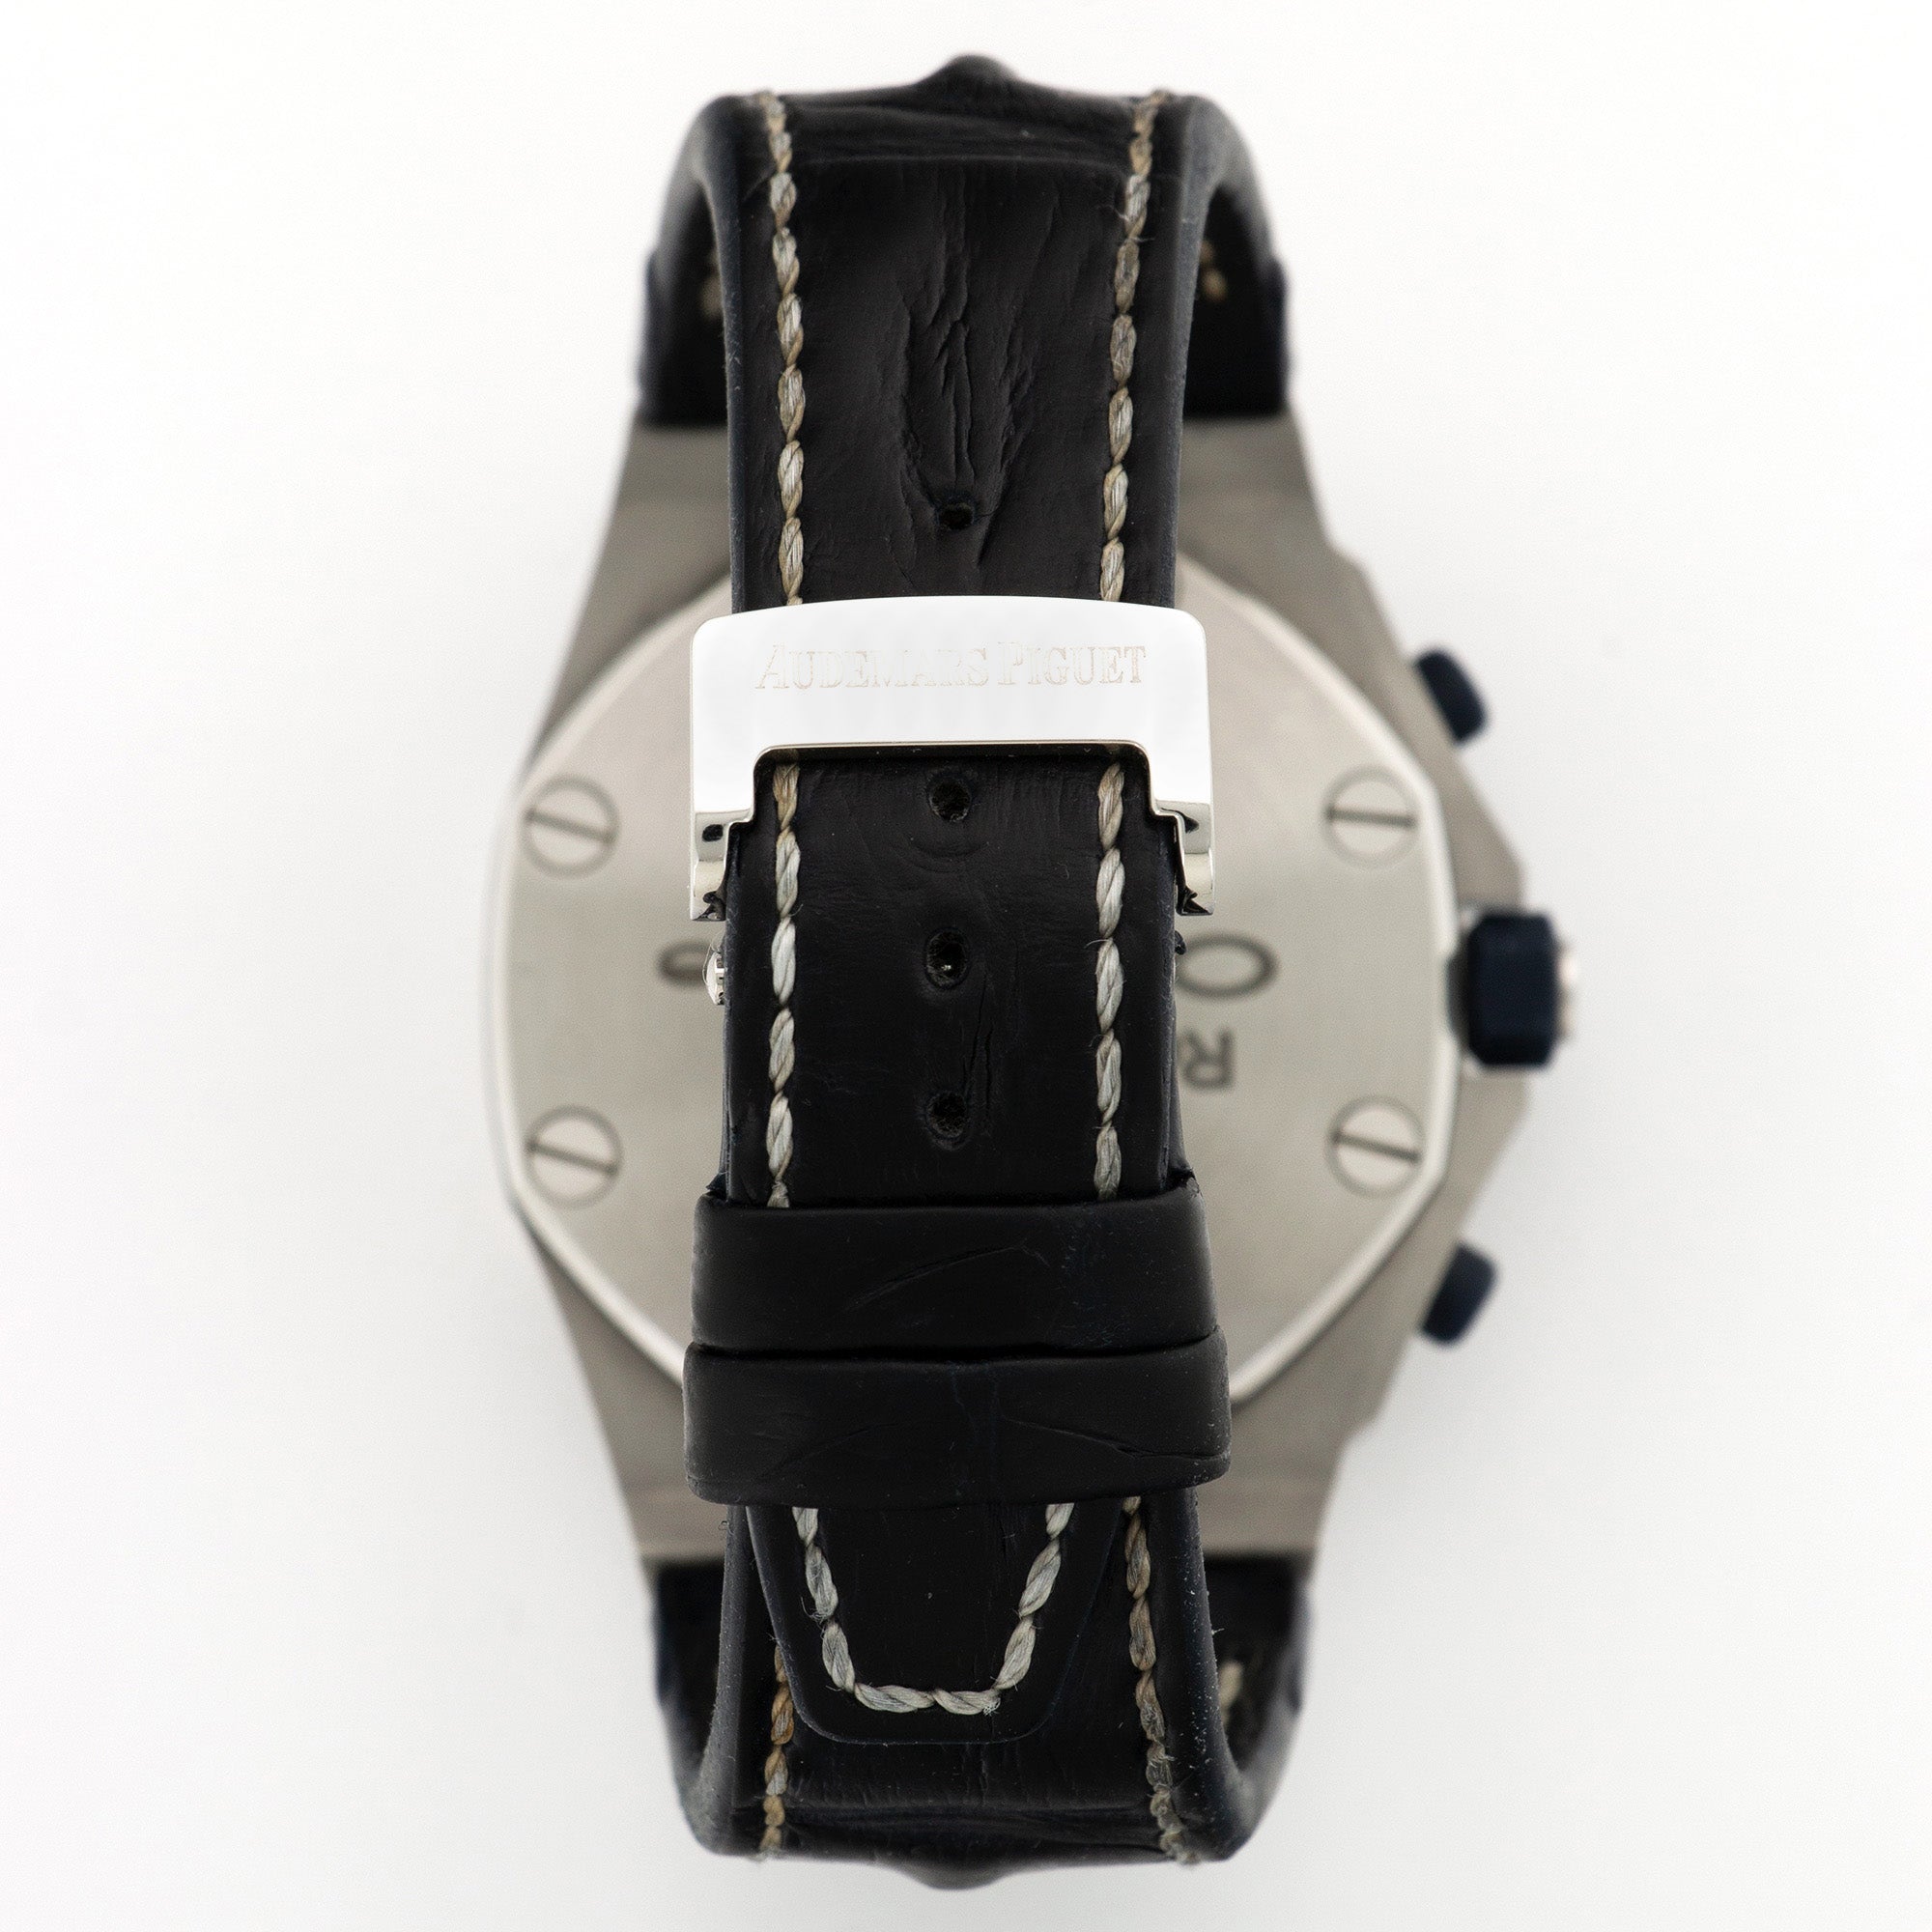 Audemars Piguet - Audemars Piguet Royal Oak Offshore Navy Watch Ref. 26170 - The Keystone Watches